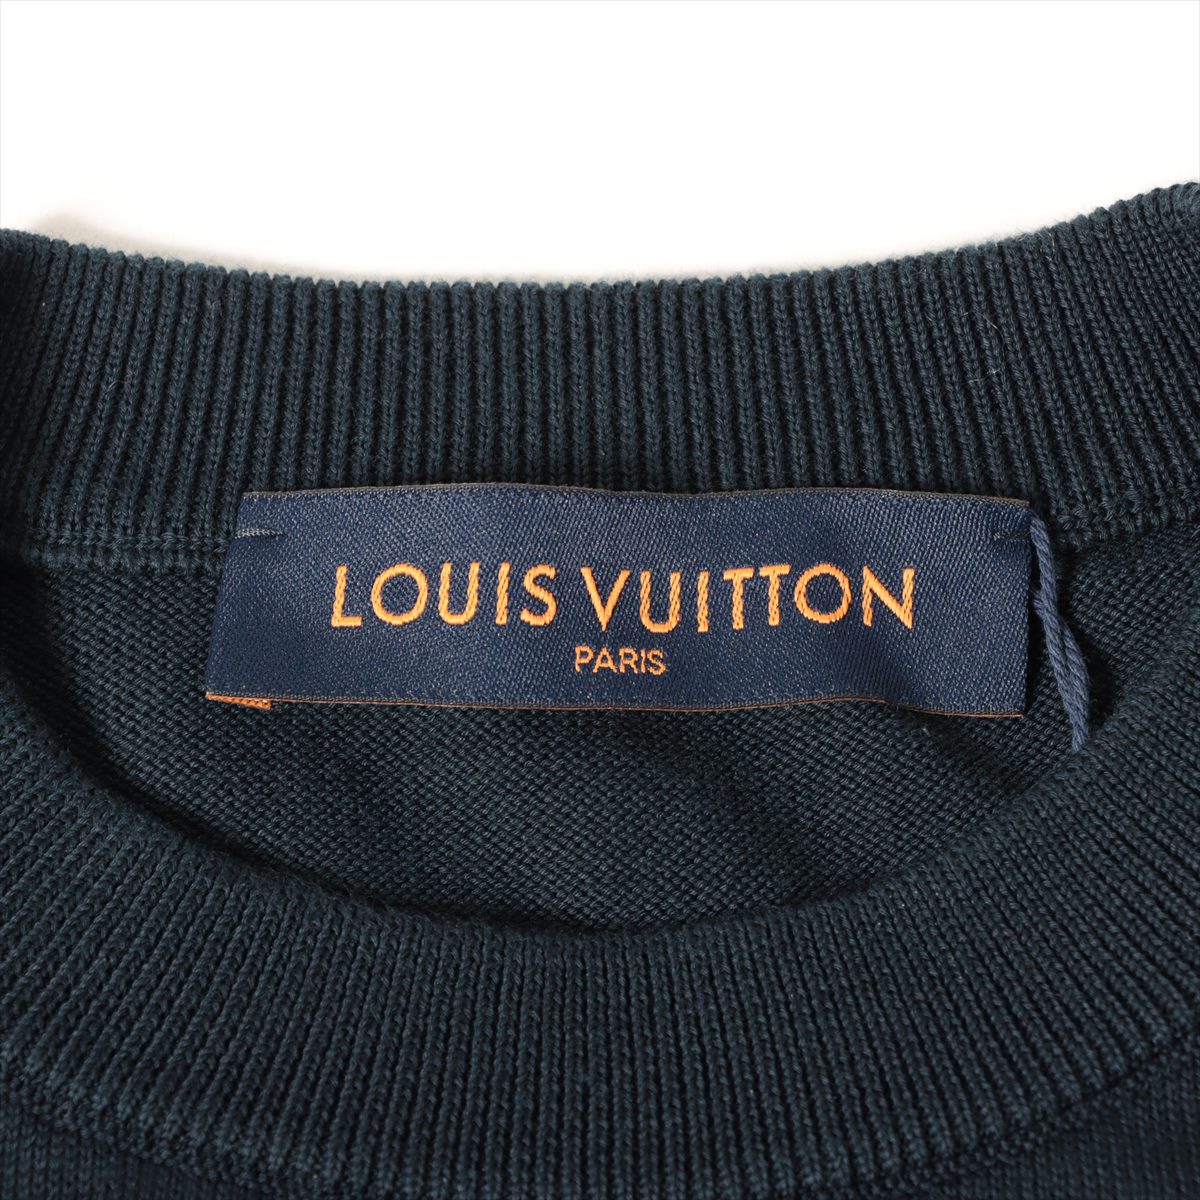 Louis Vuitton x NIGO 22SS Cotton Short Sleeve Knitwear XS Men's Navy blue  heart logo RM221M